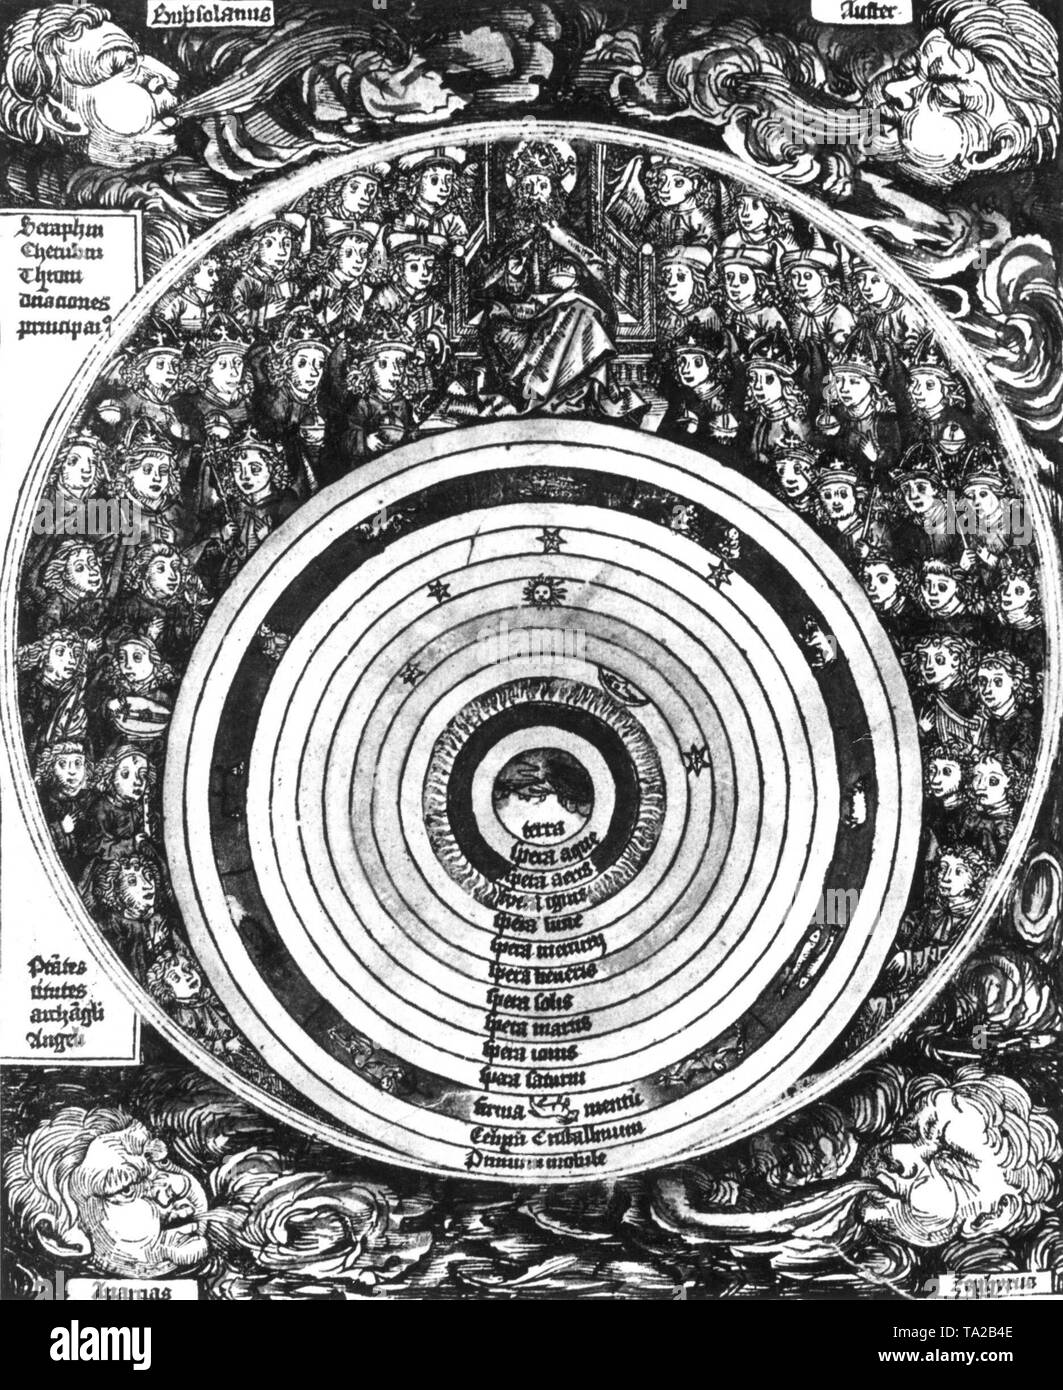 Le système du monde de Ptolémée (astronome antique autour de 150 AD.) La terre s'est reposé dans le centre de l'univers avec les planètes tournant autour d'elle, avec le soleil au milieu. Après une gravure du livre des chroniques de Hartmann Schedel, Nuremberg 1493 Banque D'Images